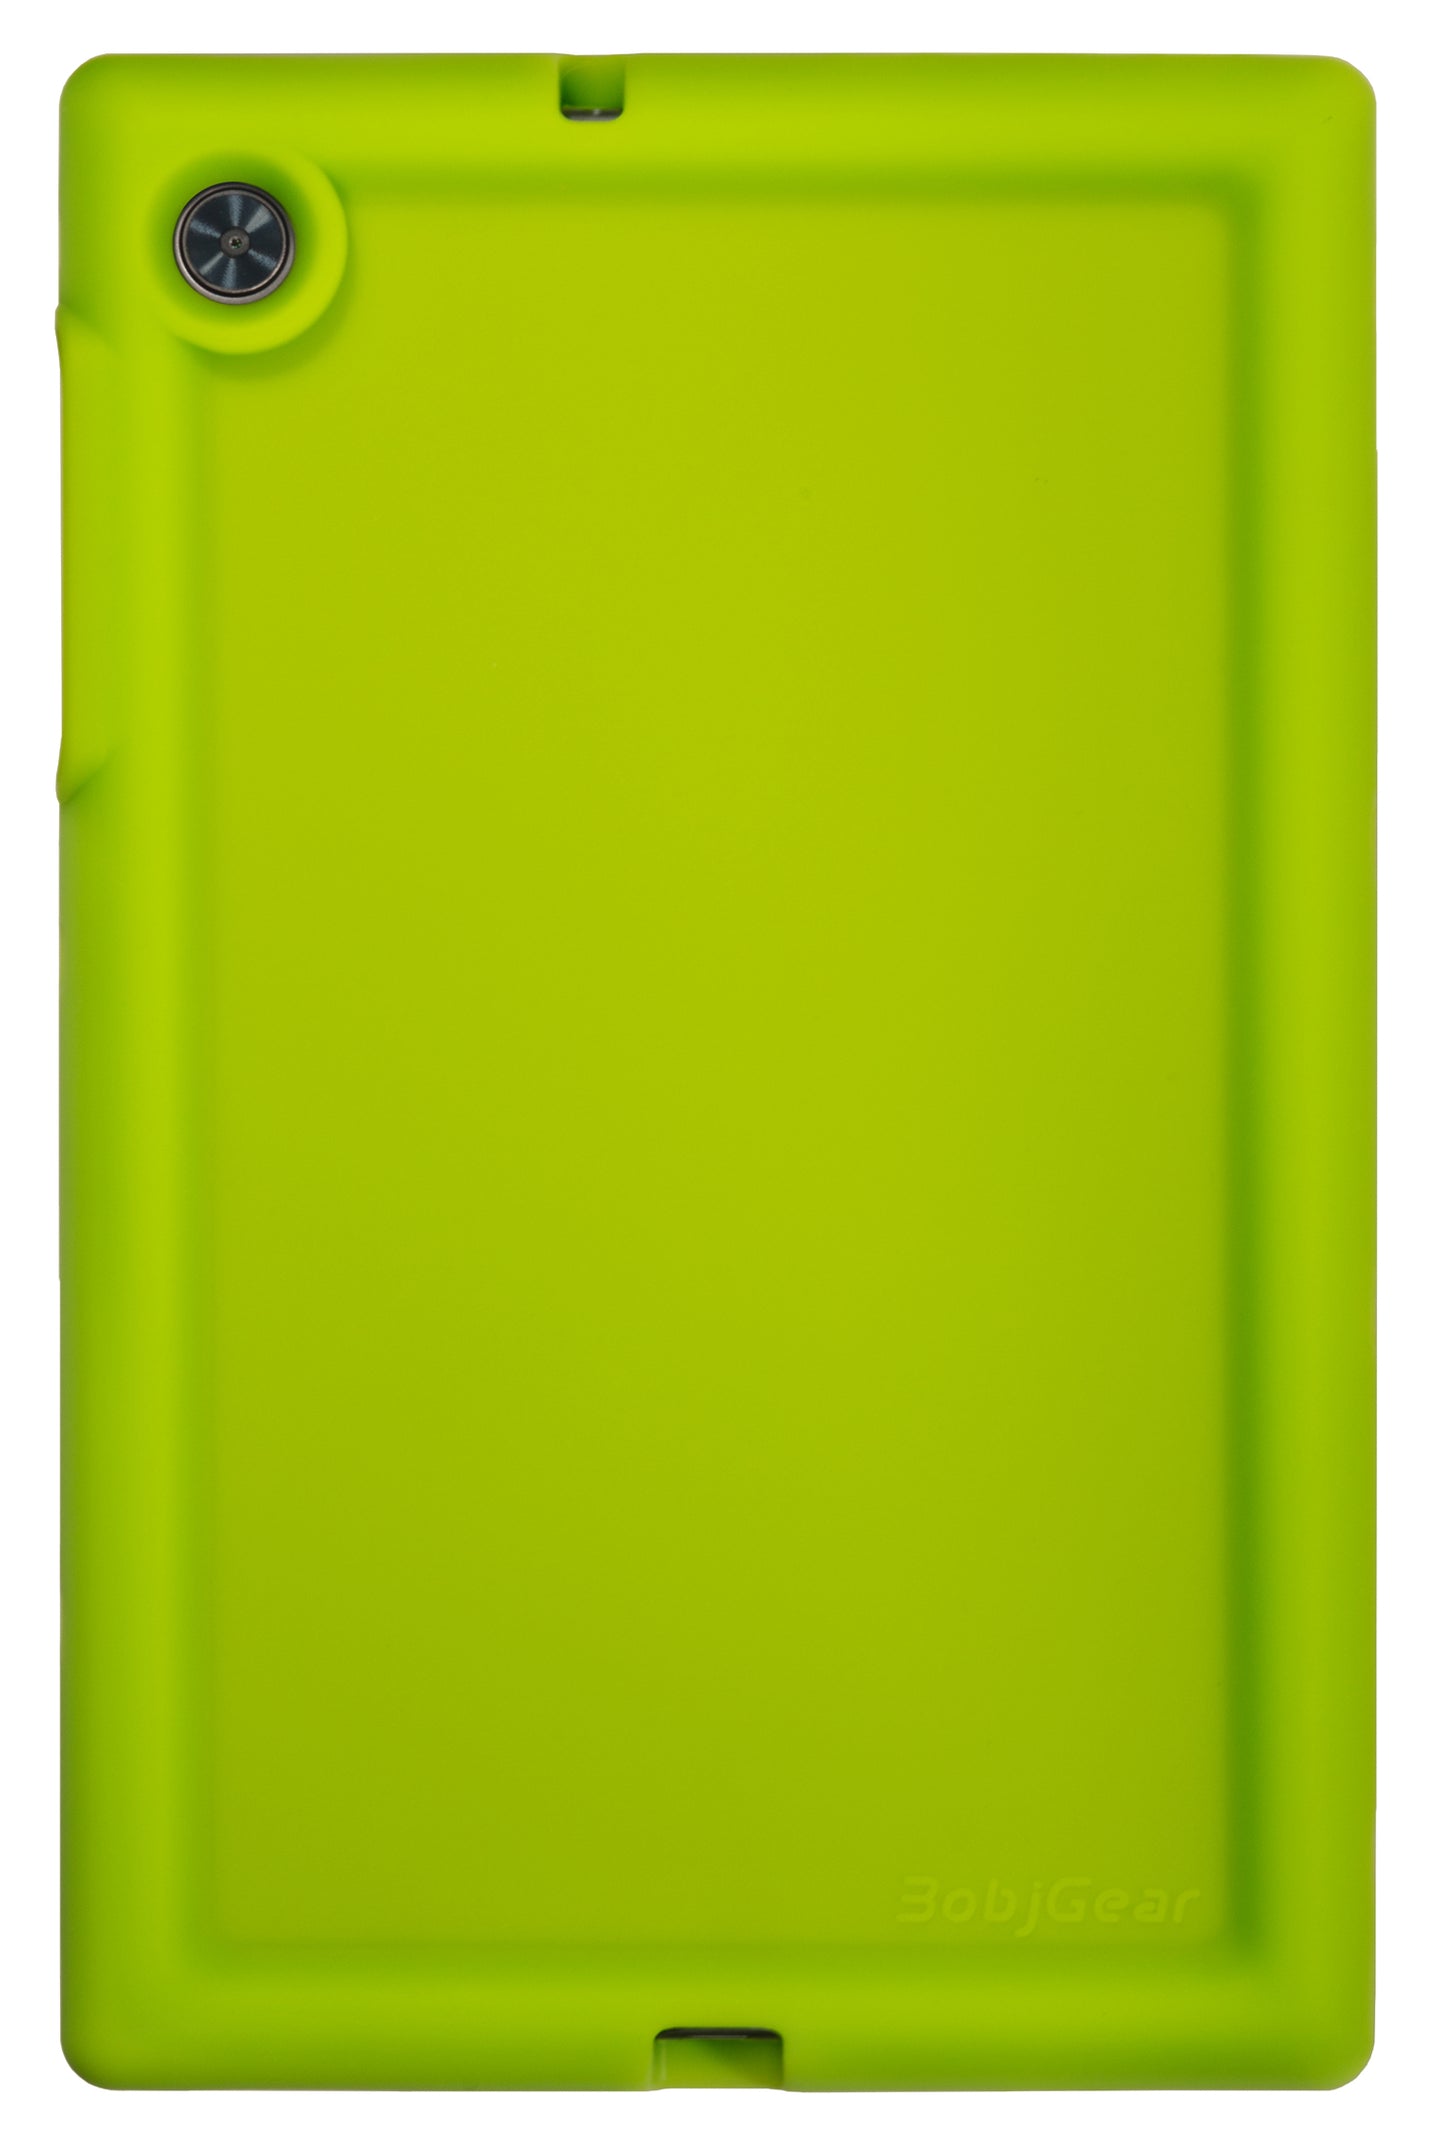 Bobj Rugged Tablet Case for Lenovo Tab M10 HD 2nd Gen 10.1 inch Models TB-X306F, TB-X306X - Gotcha Green